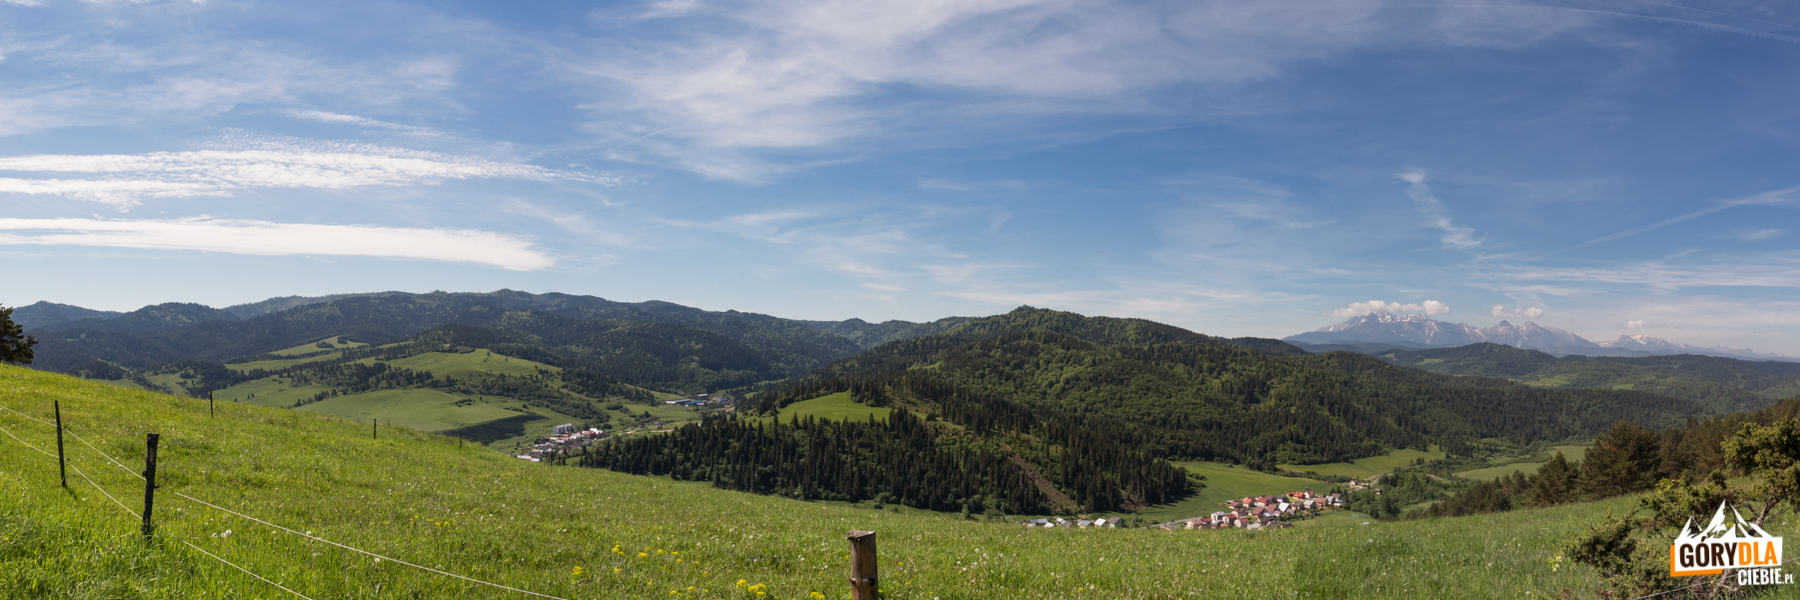 Widok z nad Przełęczy Leśnickiej w kierunku południowo zachodnim: w dole wieś Haligovce, na horyzoncie Tatry